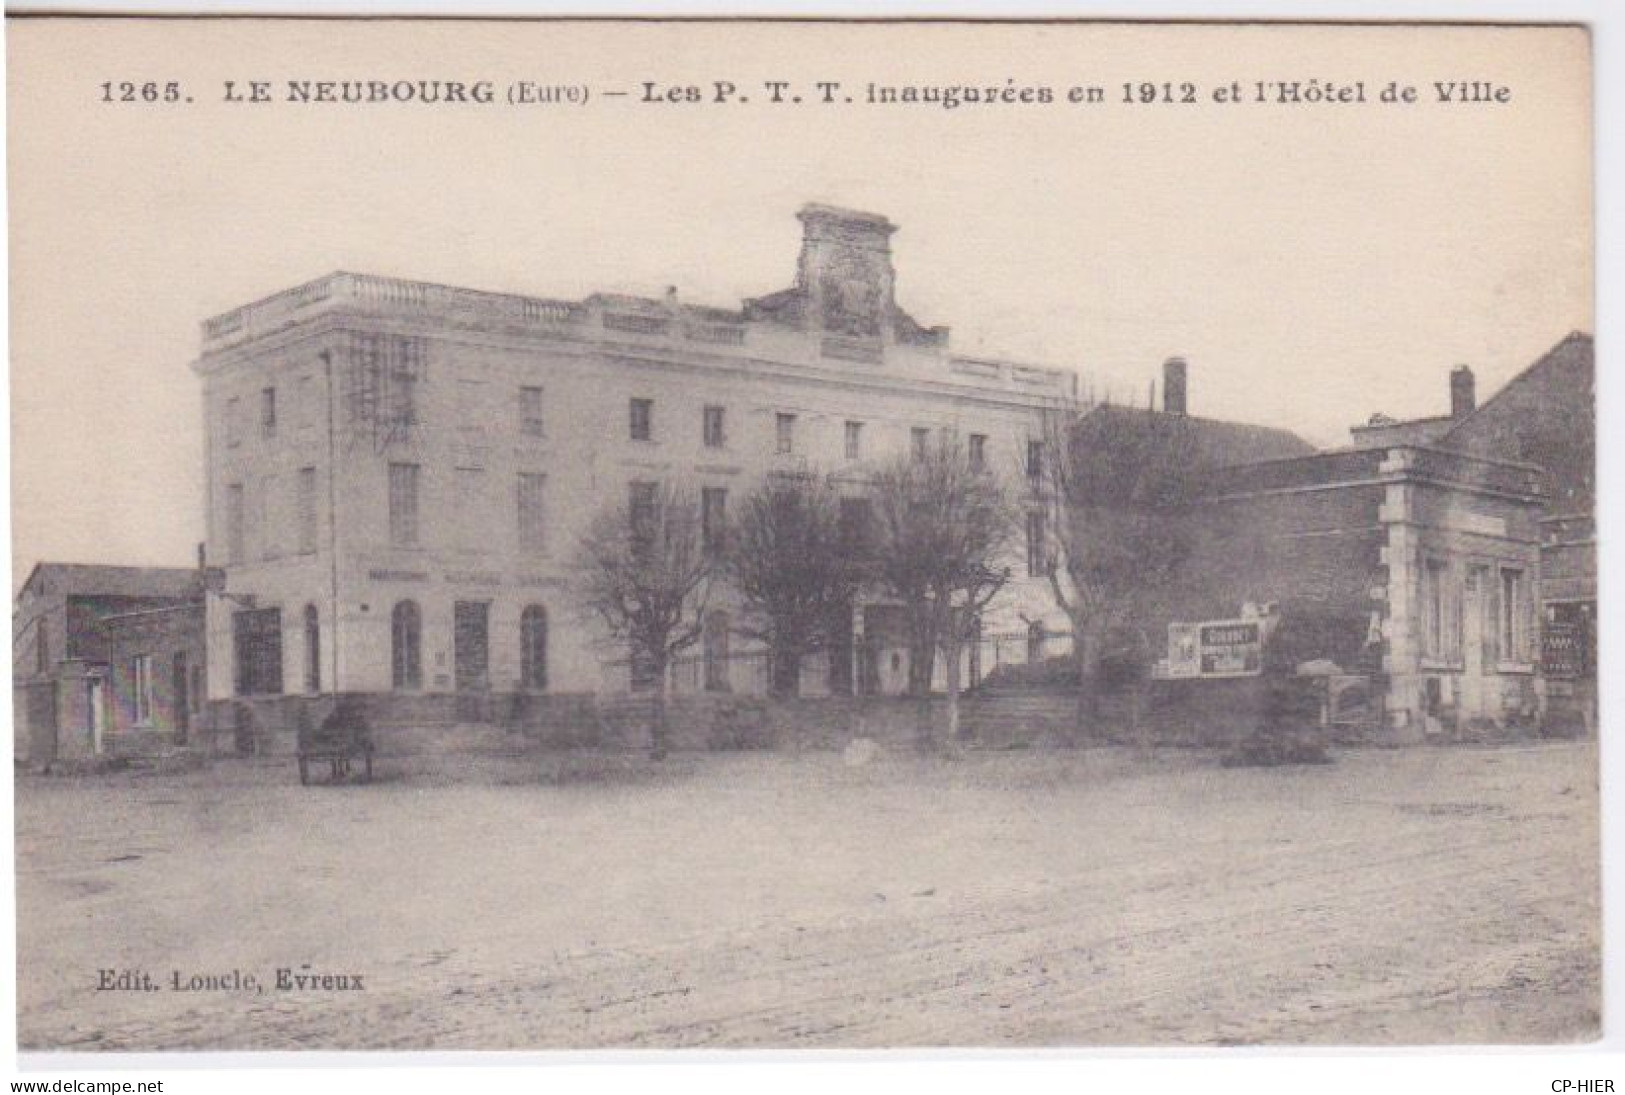 27 - EURE - LE NEUBOURG - LE BATIMENT DE LA POSTE - PTT INAUGUREE EN 1912 ET HOTEL DE VILE - Le Neubourg